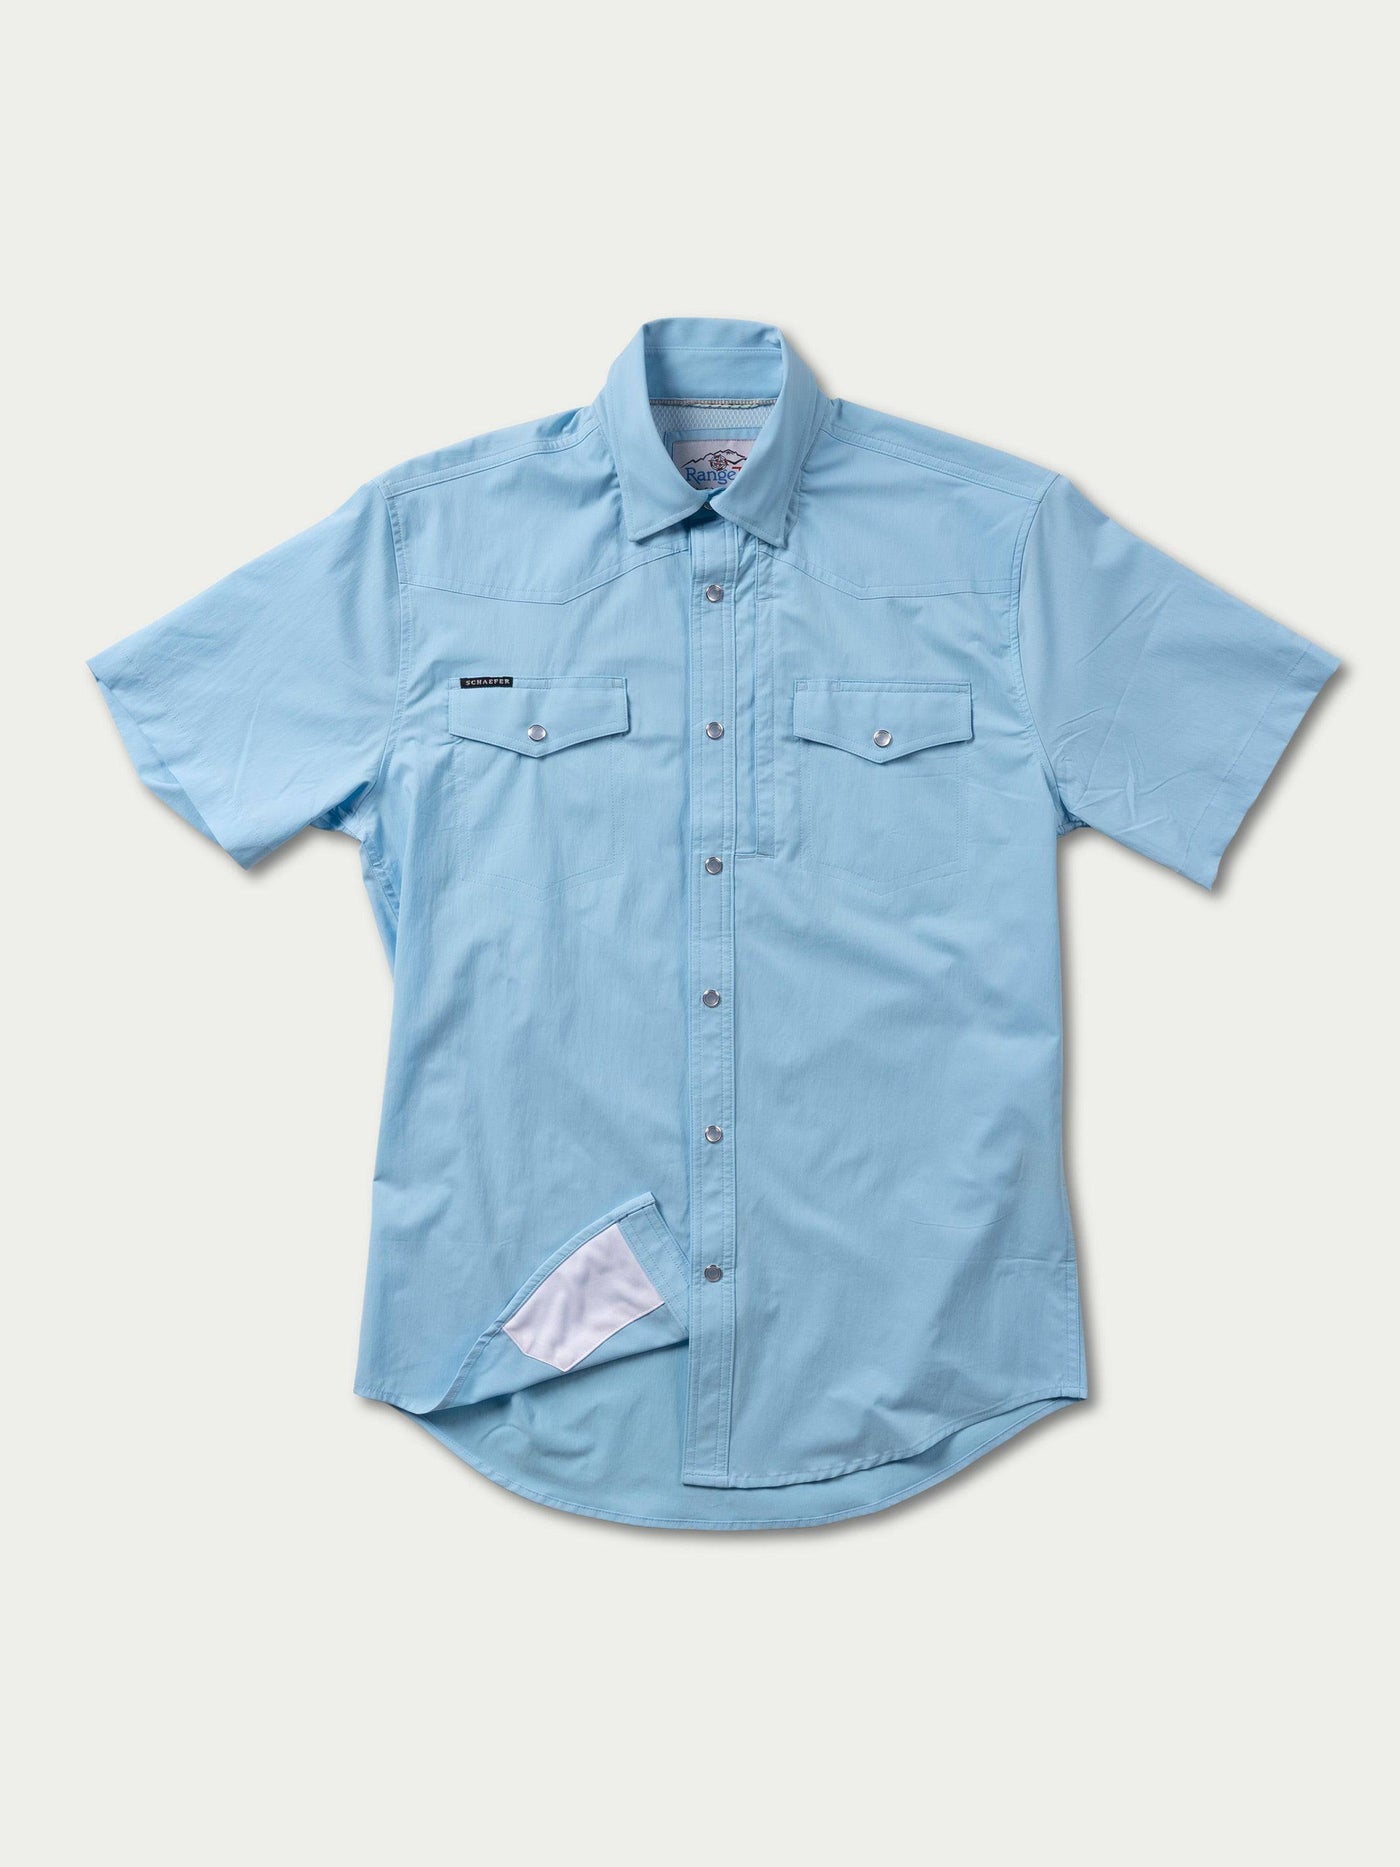 RangeTek Western Guide Shortsleeve Snap Shirt | Schaefer Outfitter